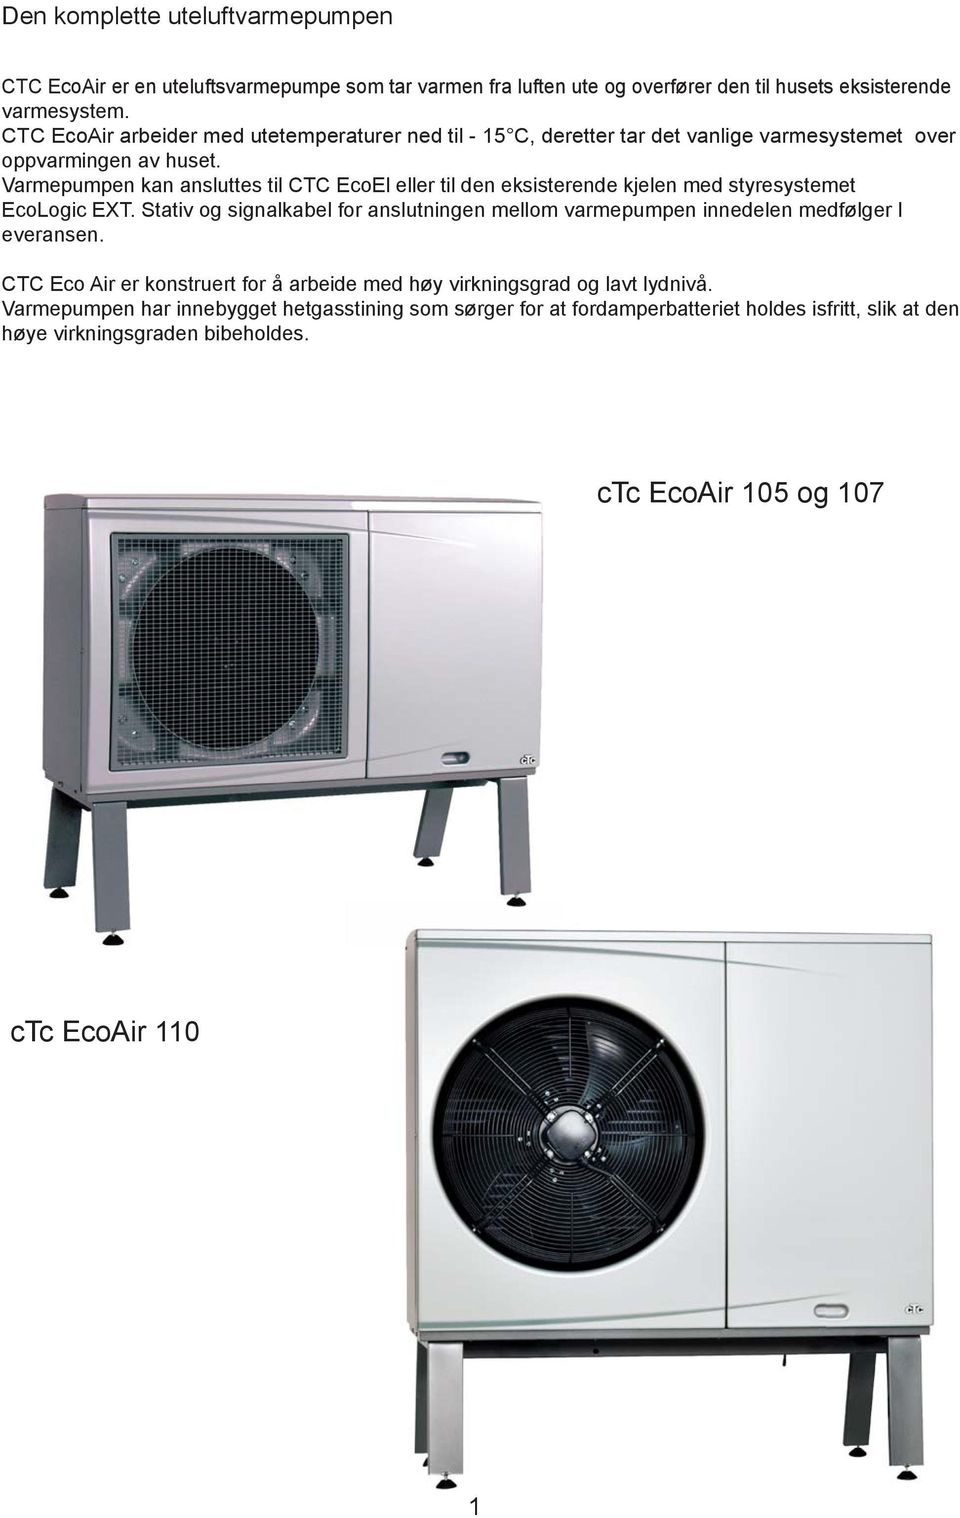 Varmepumpen kan ansluttes til CTC EcoEl eller til den eksisterende kjelen med styresystemet EcoLogic EXT.